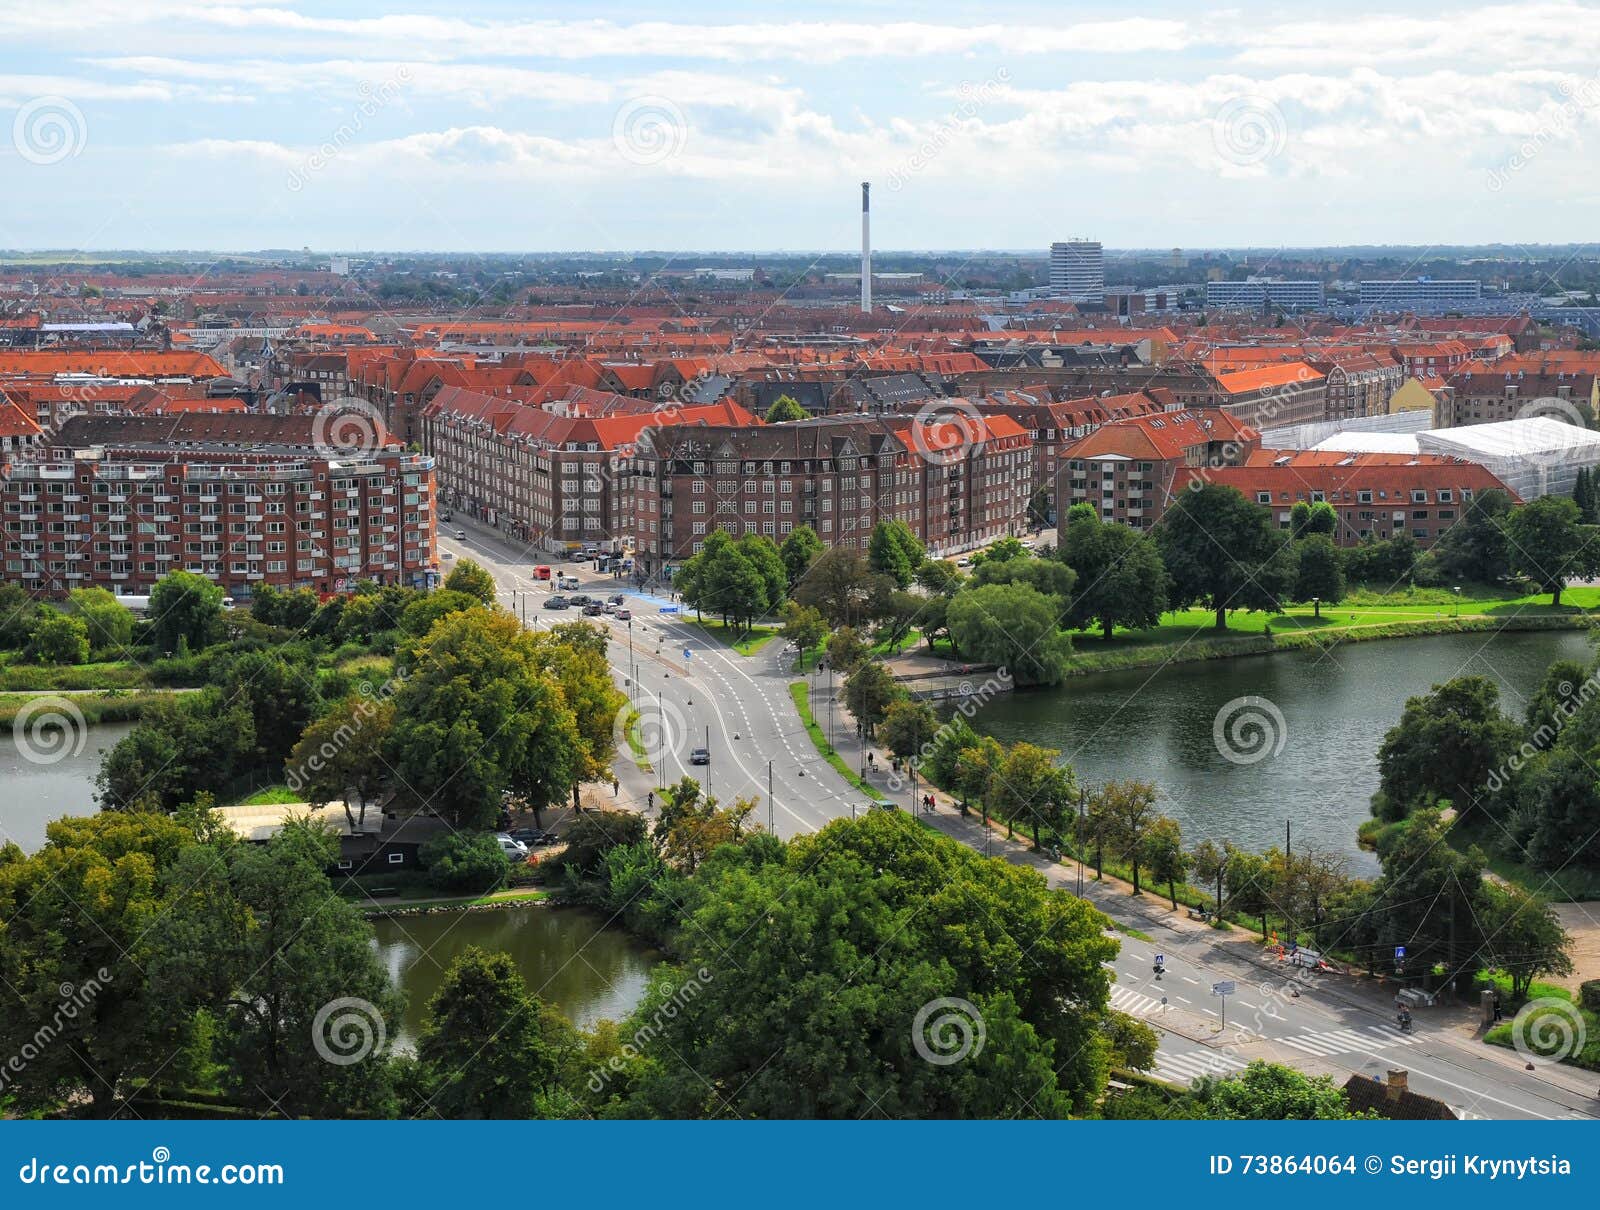 Aerial View Amagerbro District in Copenhagen, Denmark Stock Photo - Image of outdoors, copenhagen: 73864064